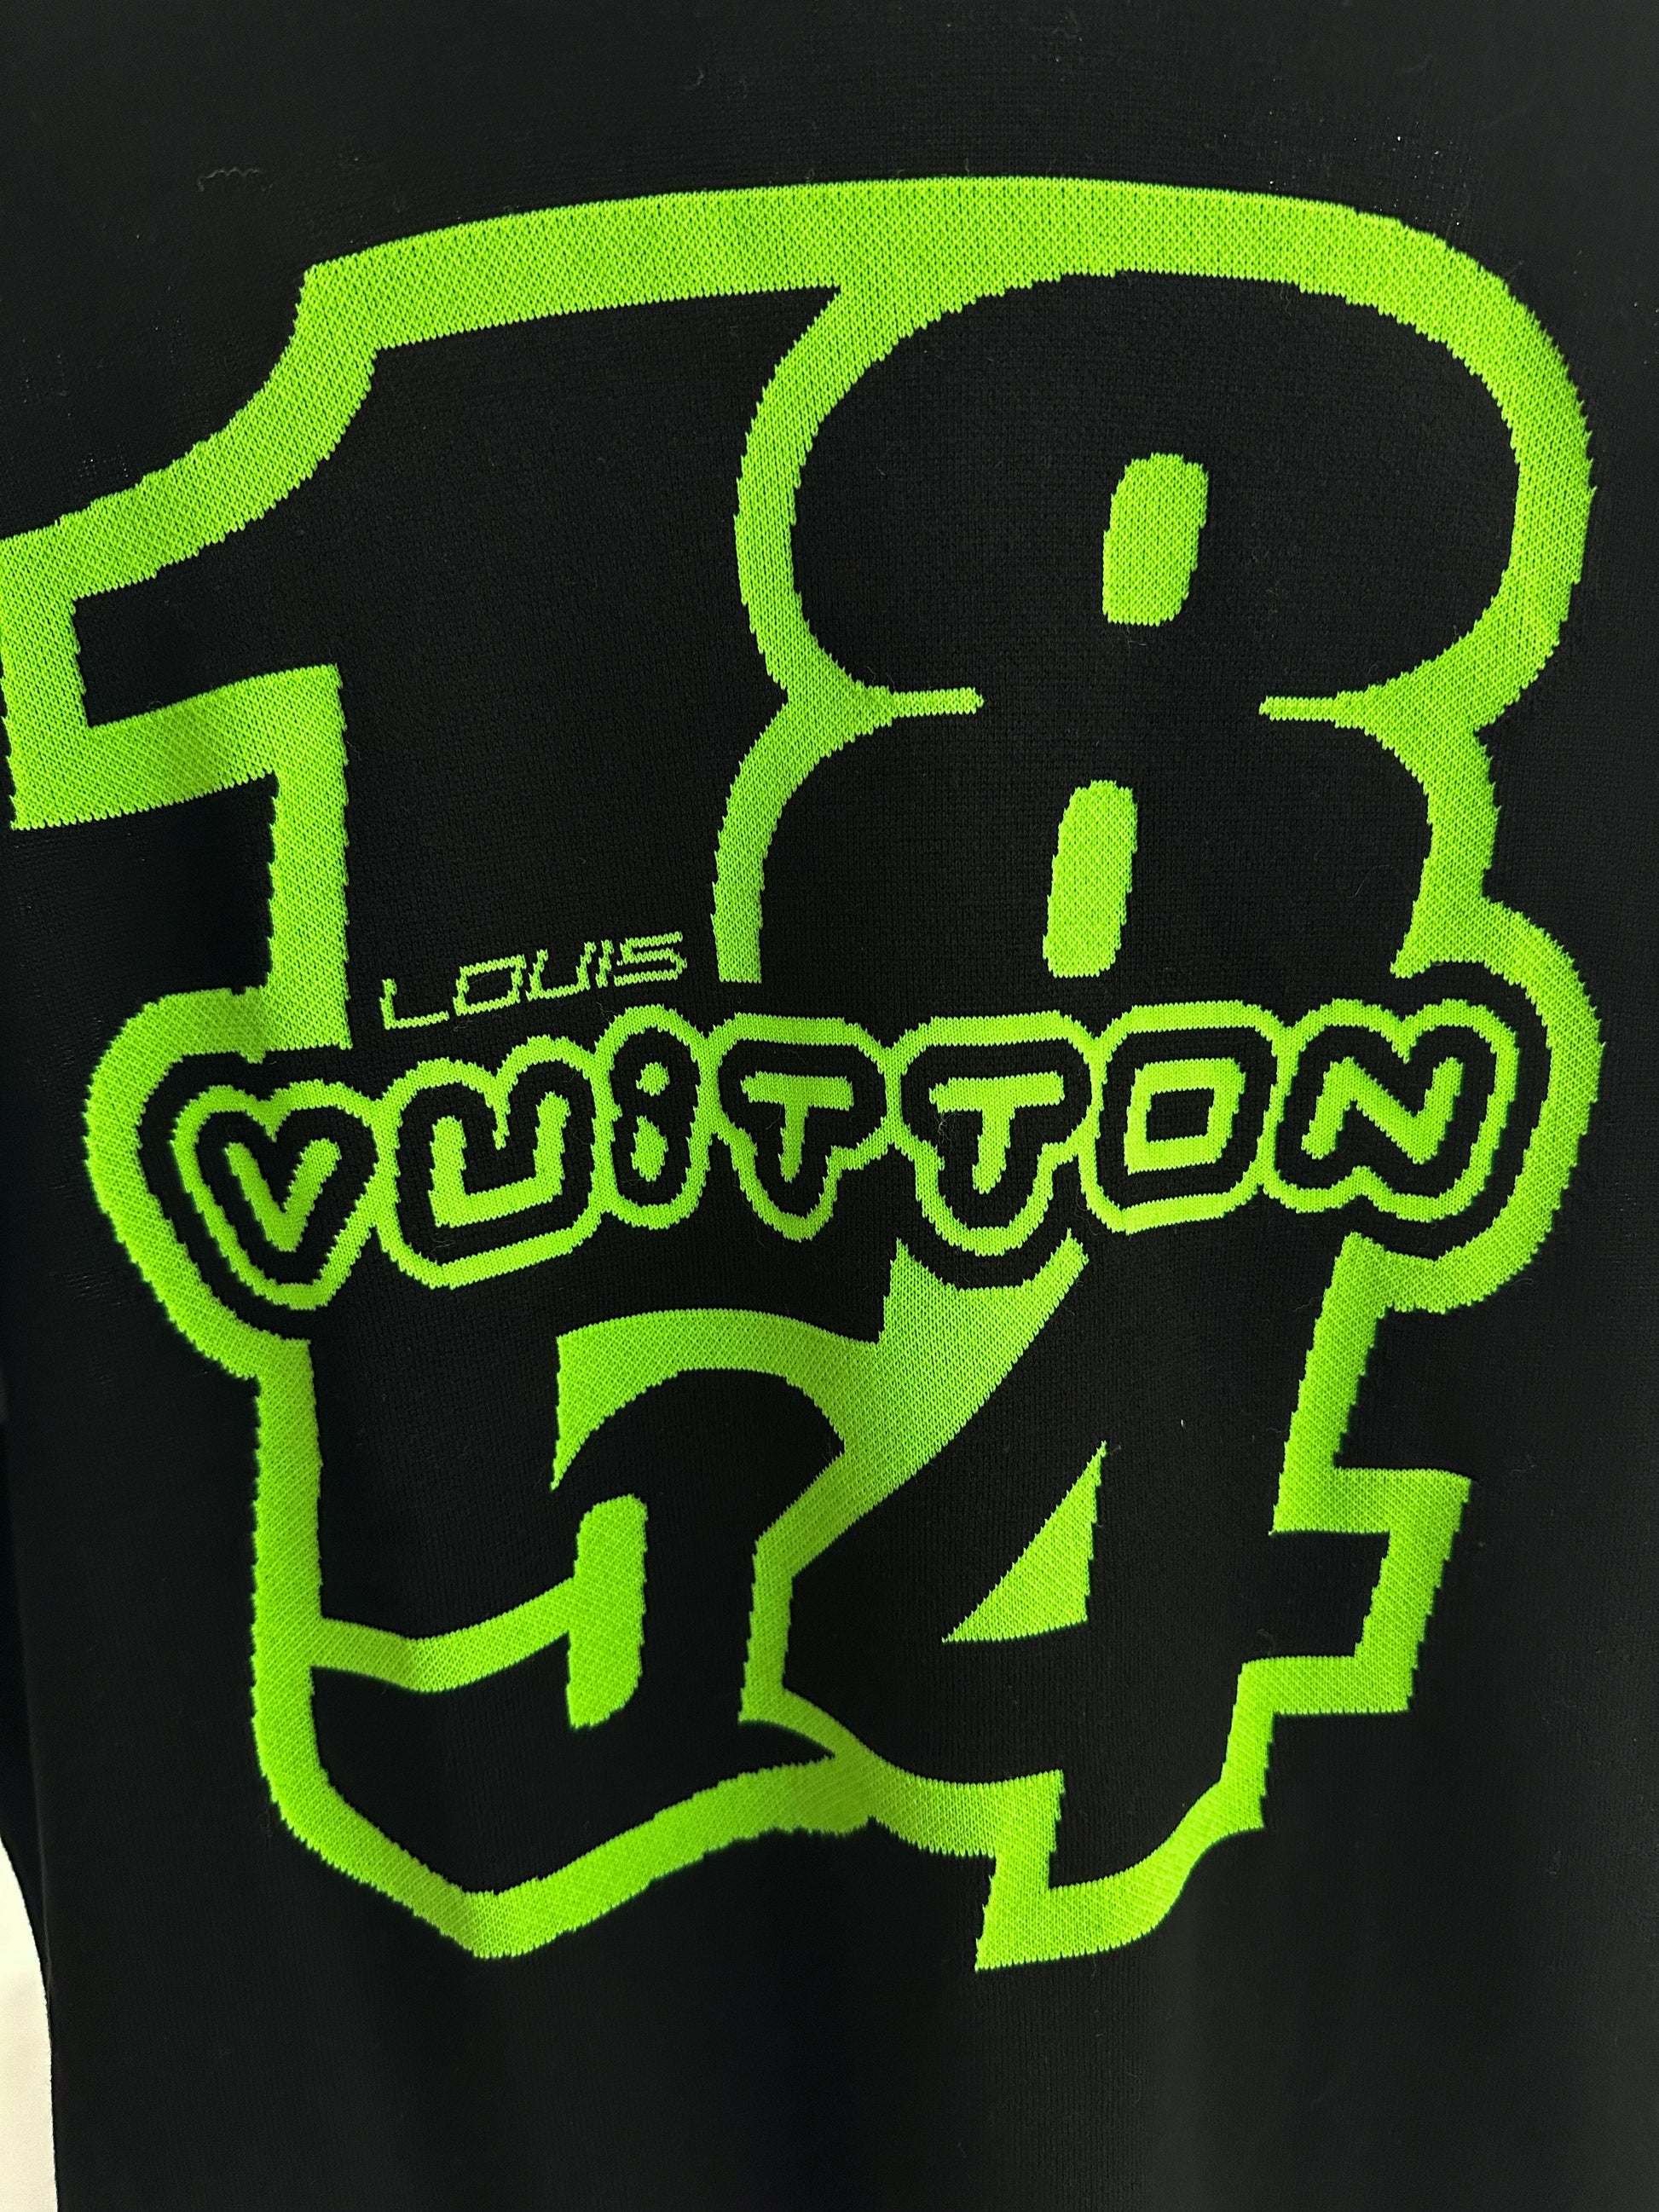 Louis Vuitton LV 1854 Graphic Knit T-Shirt